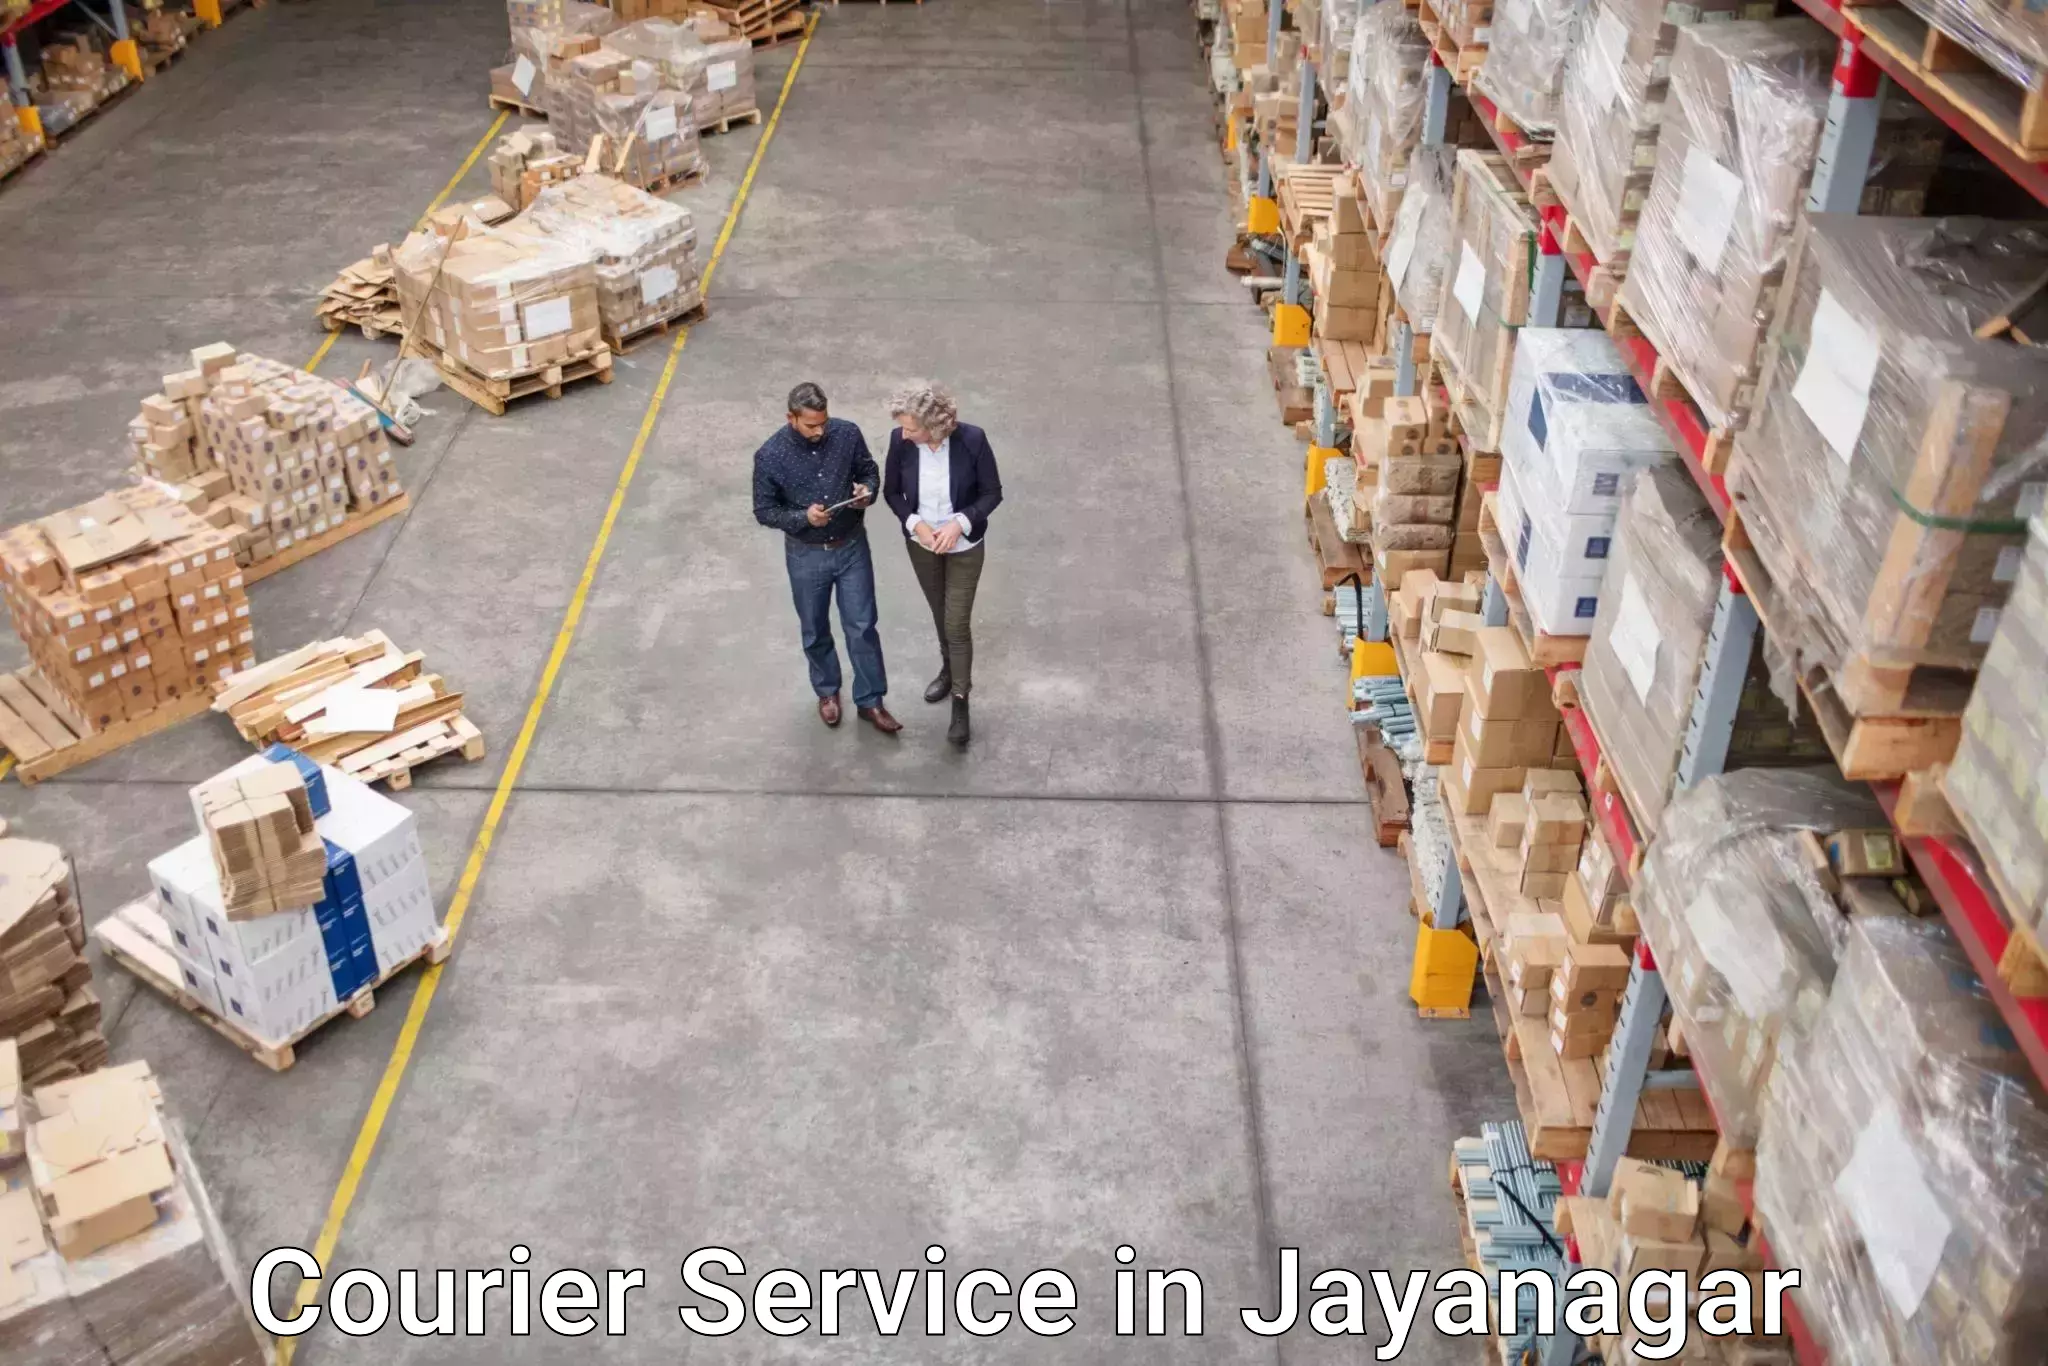 Efficient parcel tracking in Jayanagar